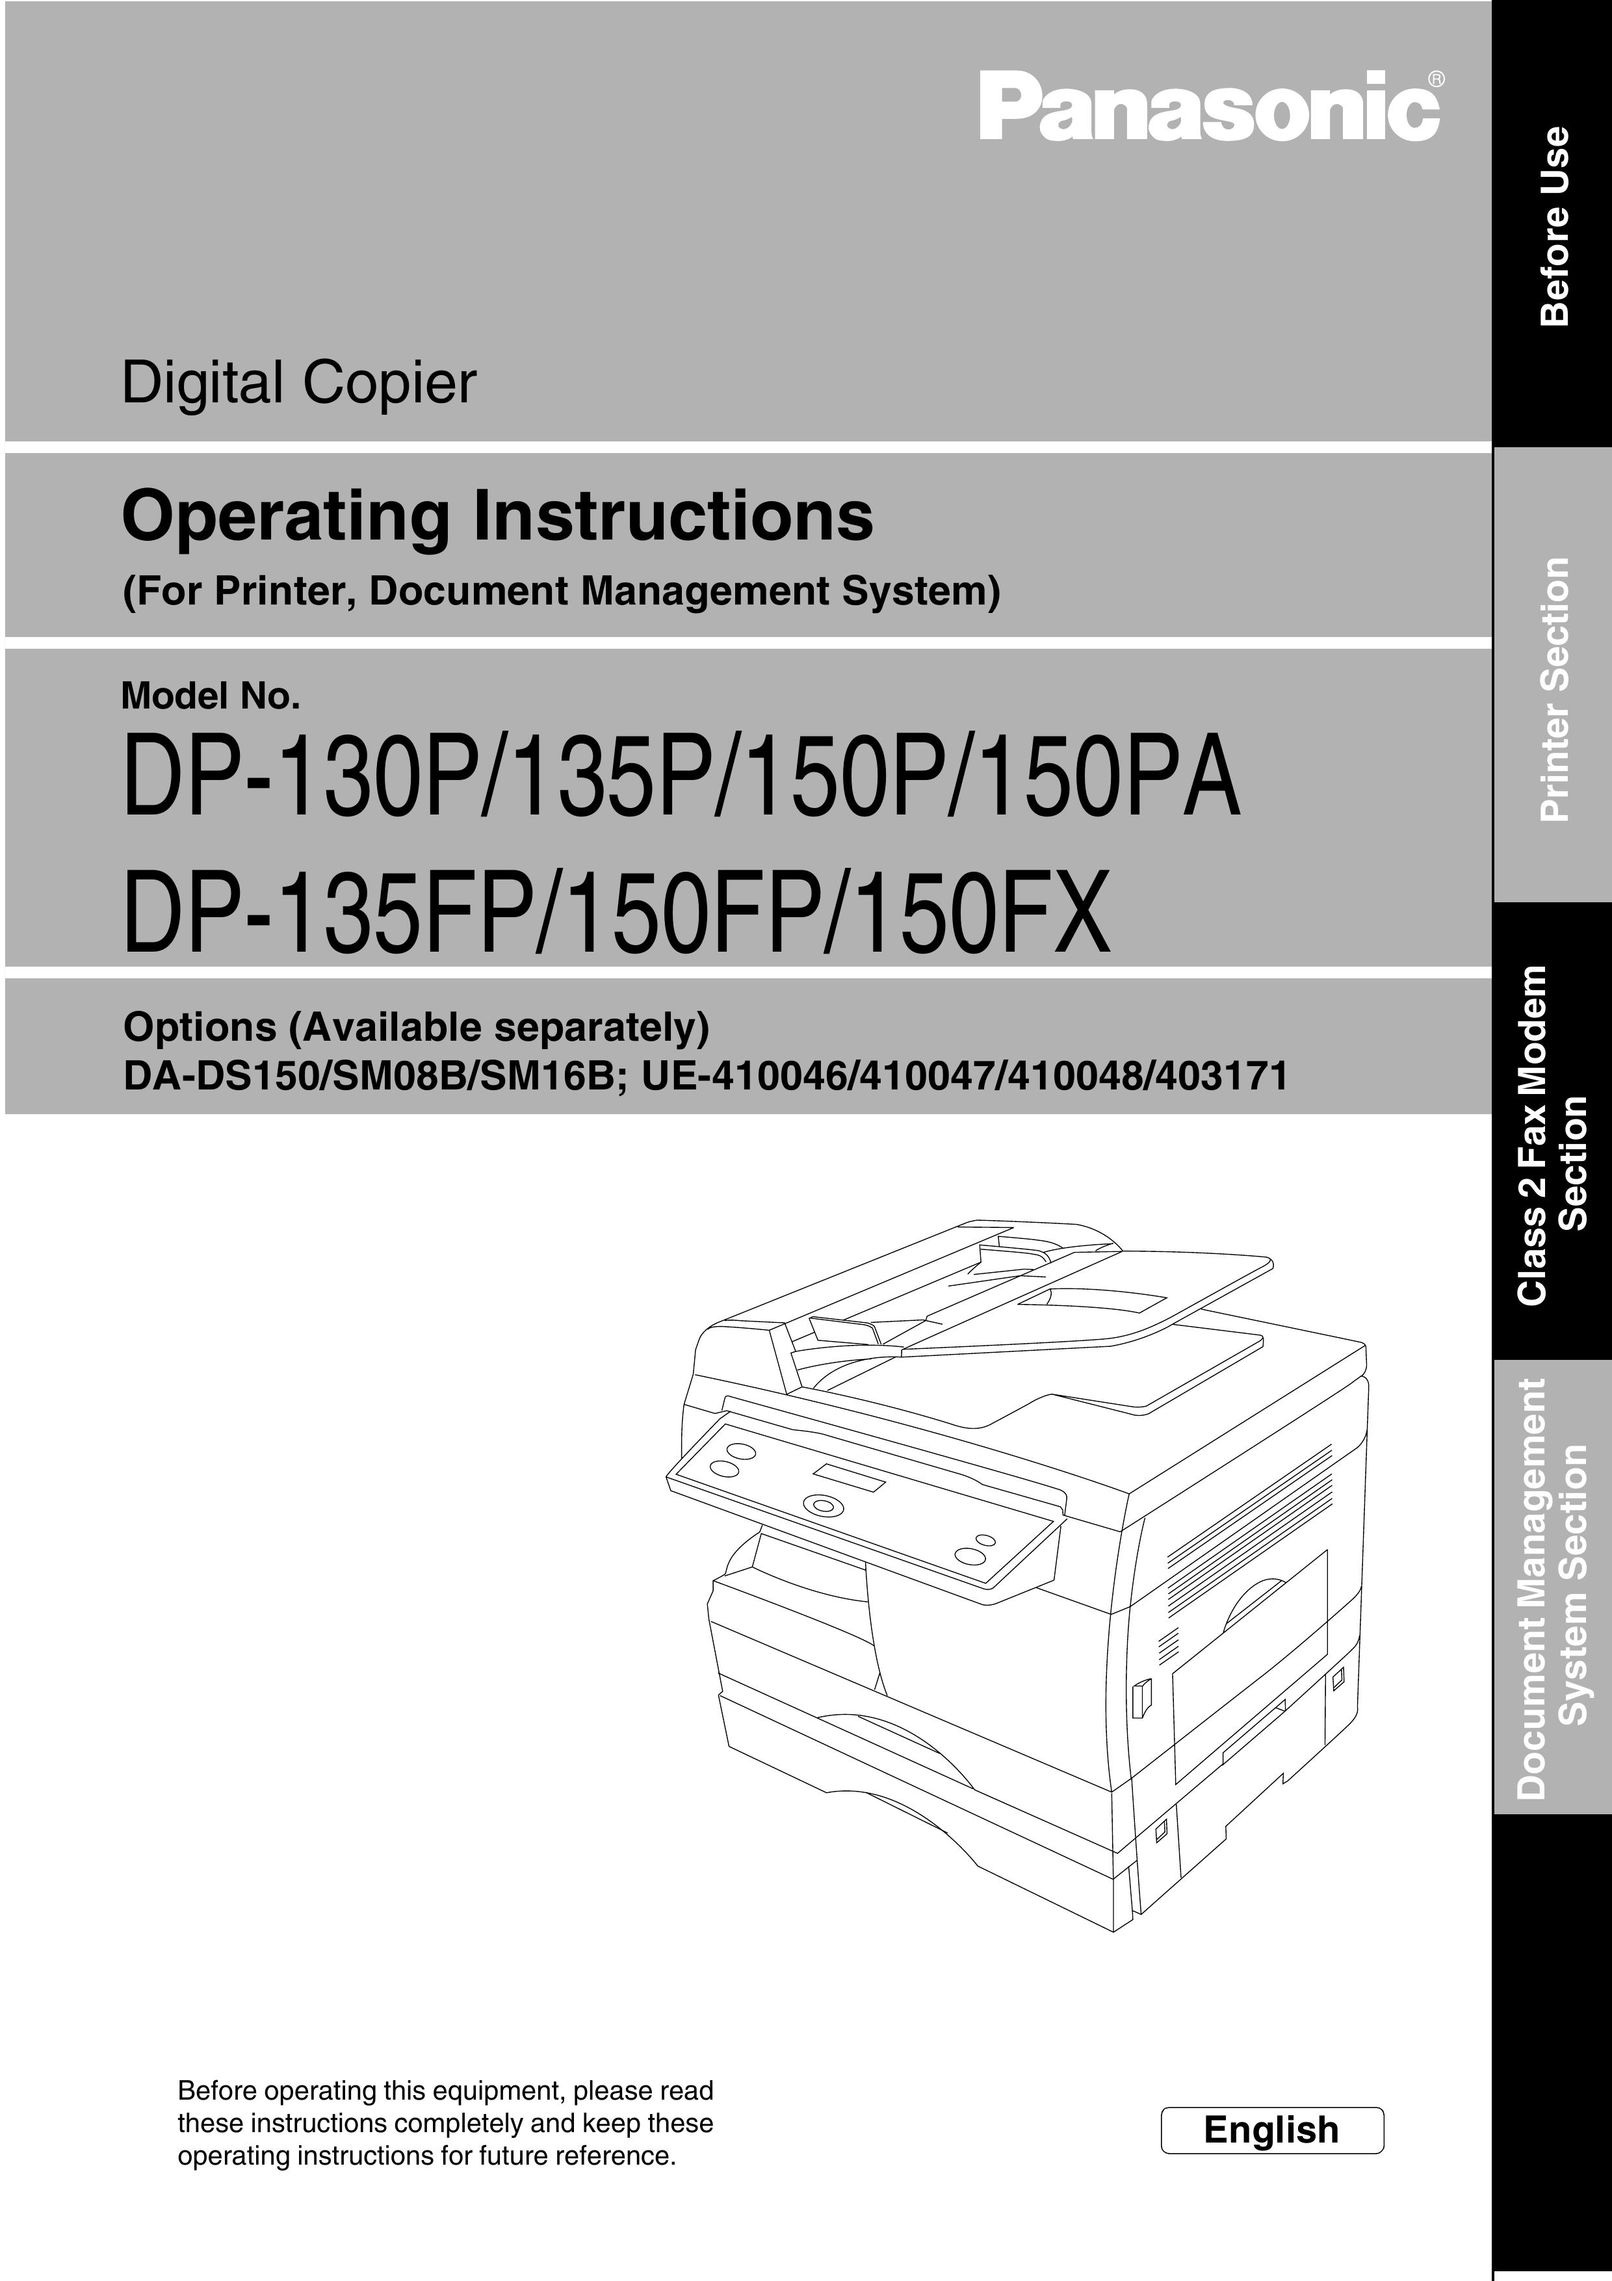 Panasonic 135P All in One Printer User Manual